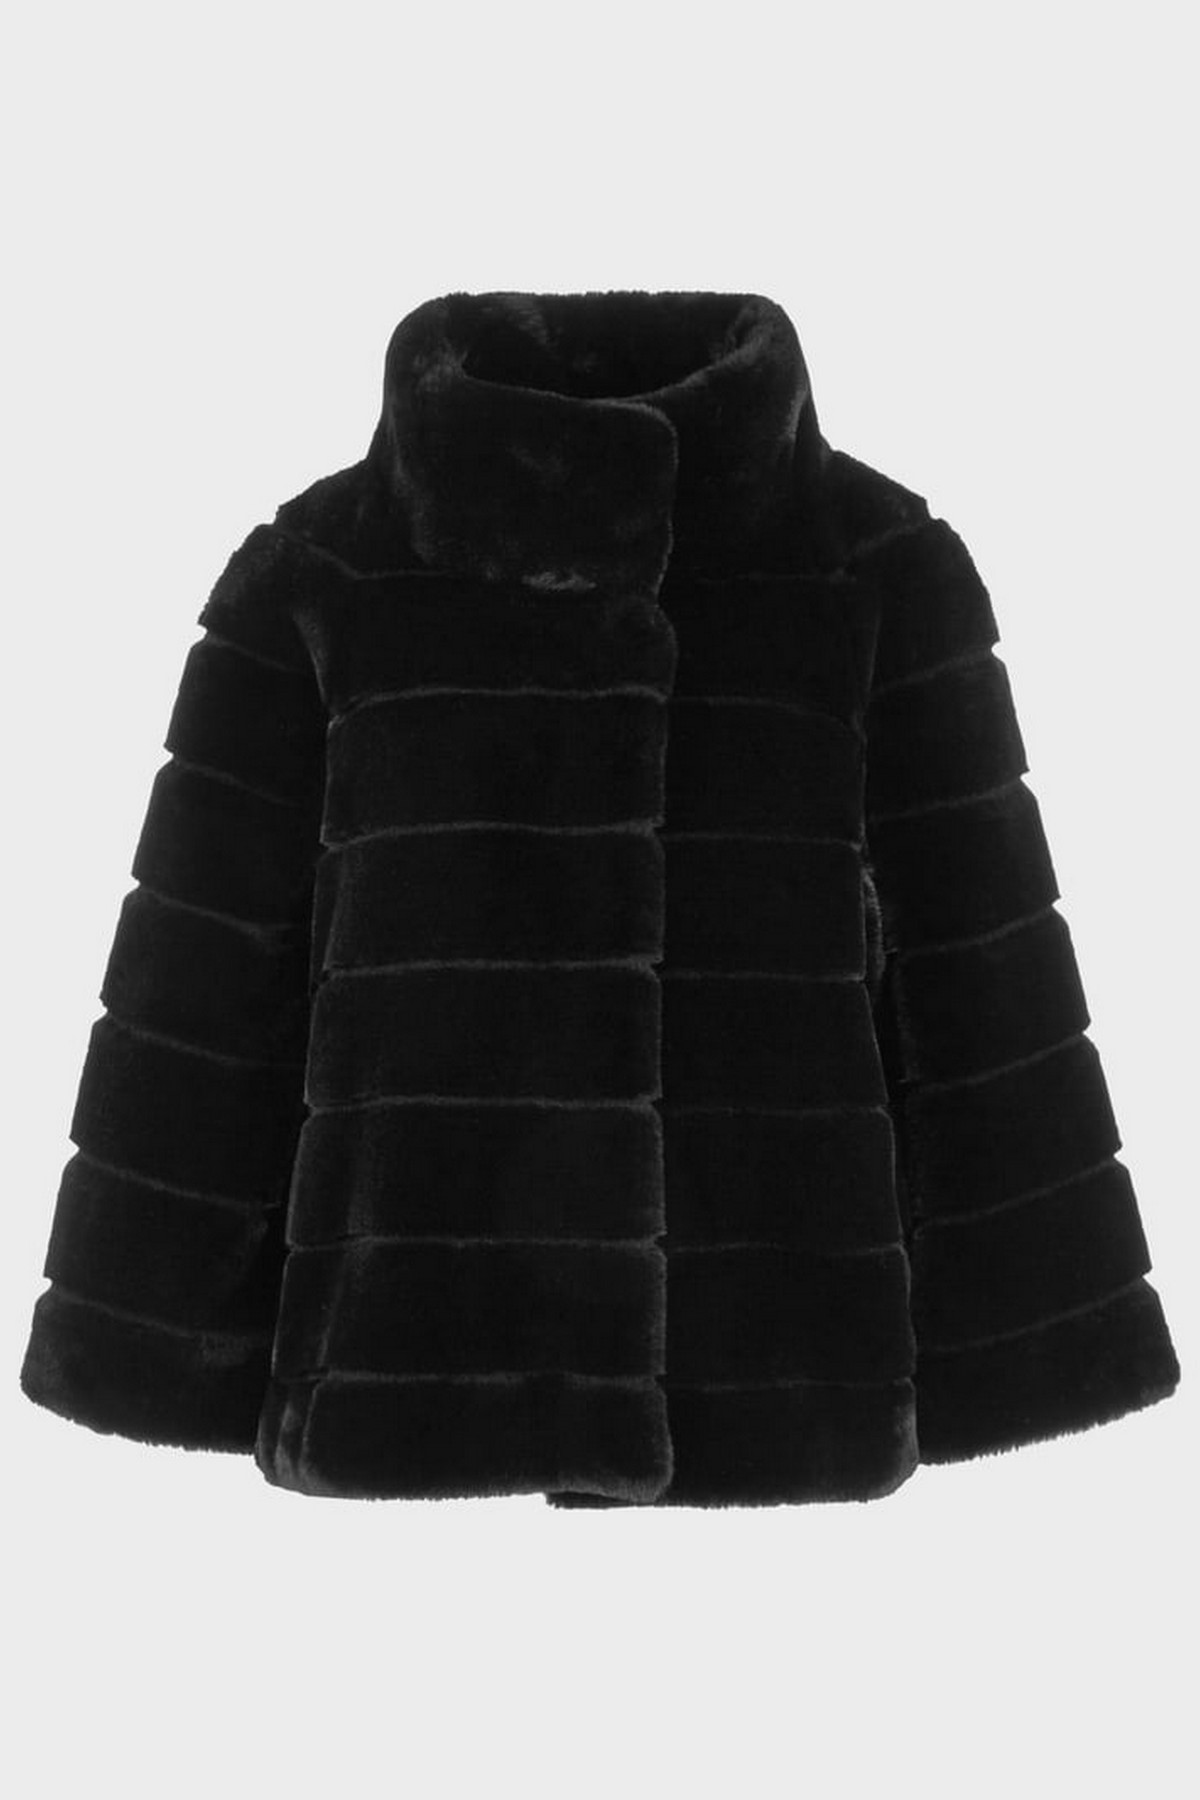 Mantel kort faux fur in de kleur zwart van het merk Marc Cain Collections